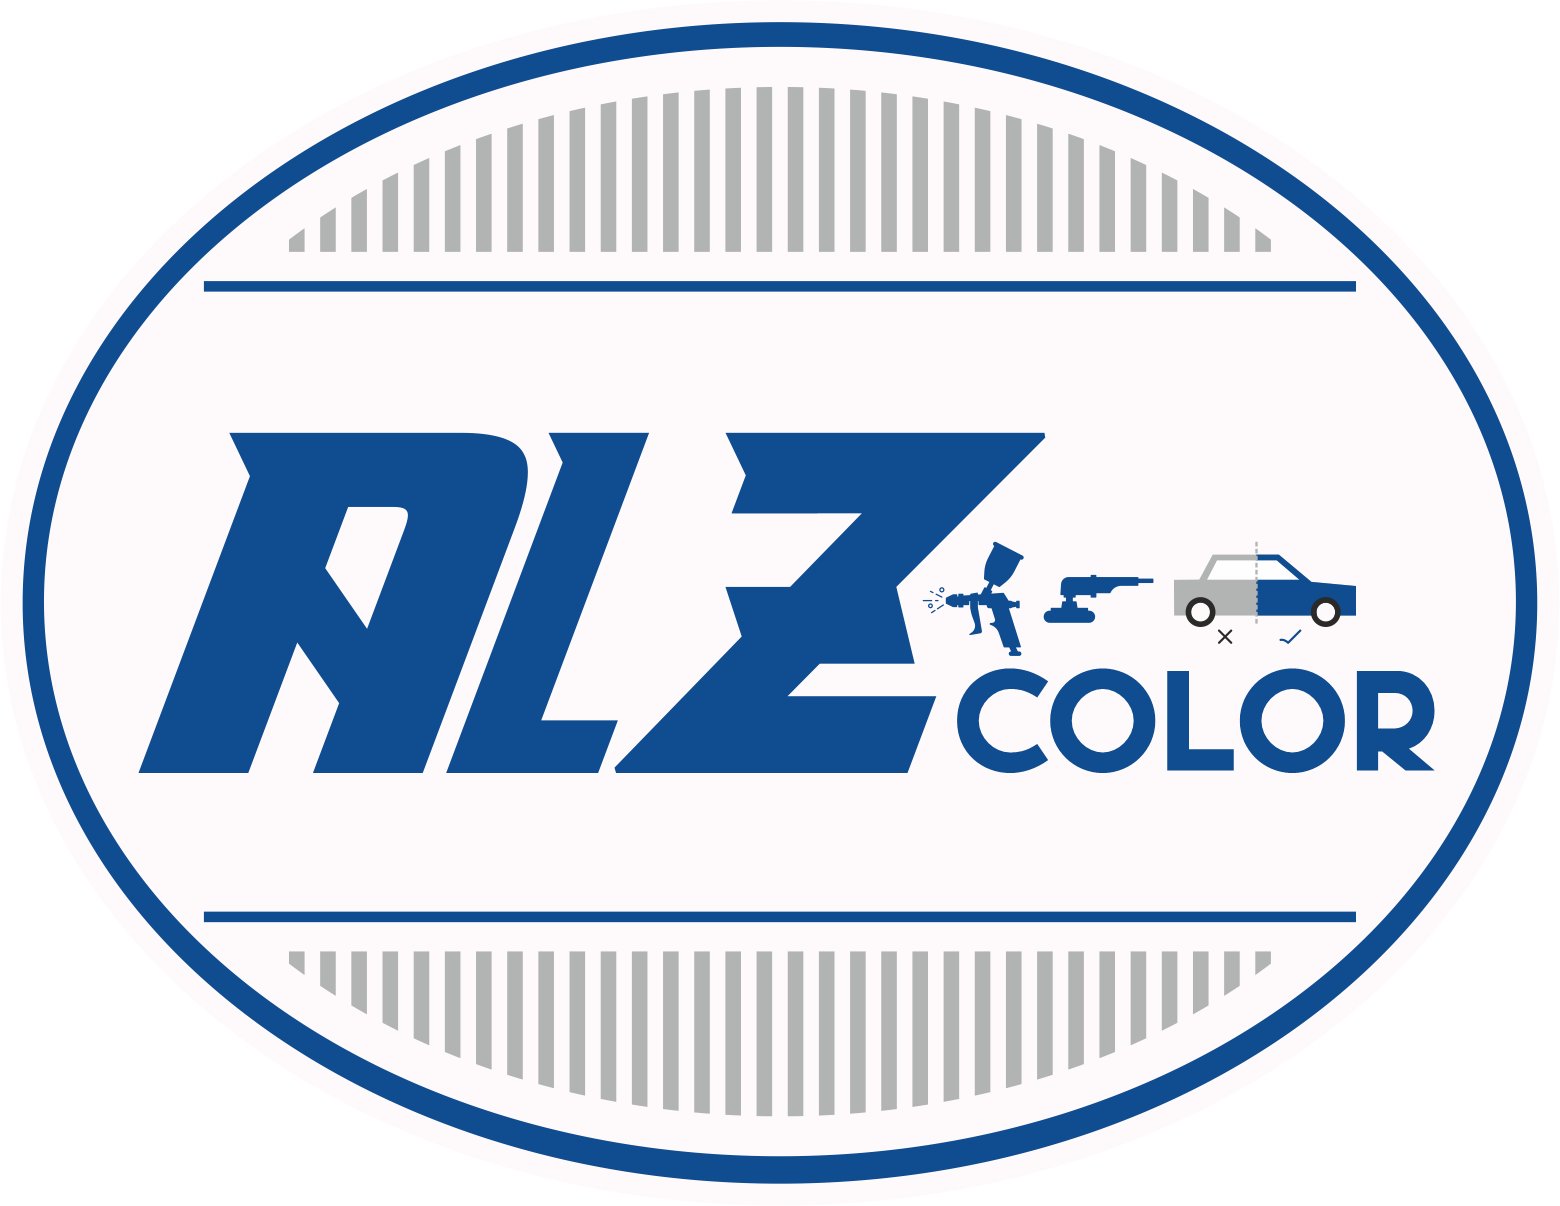 Alz-Color